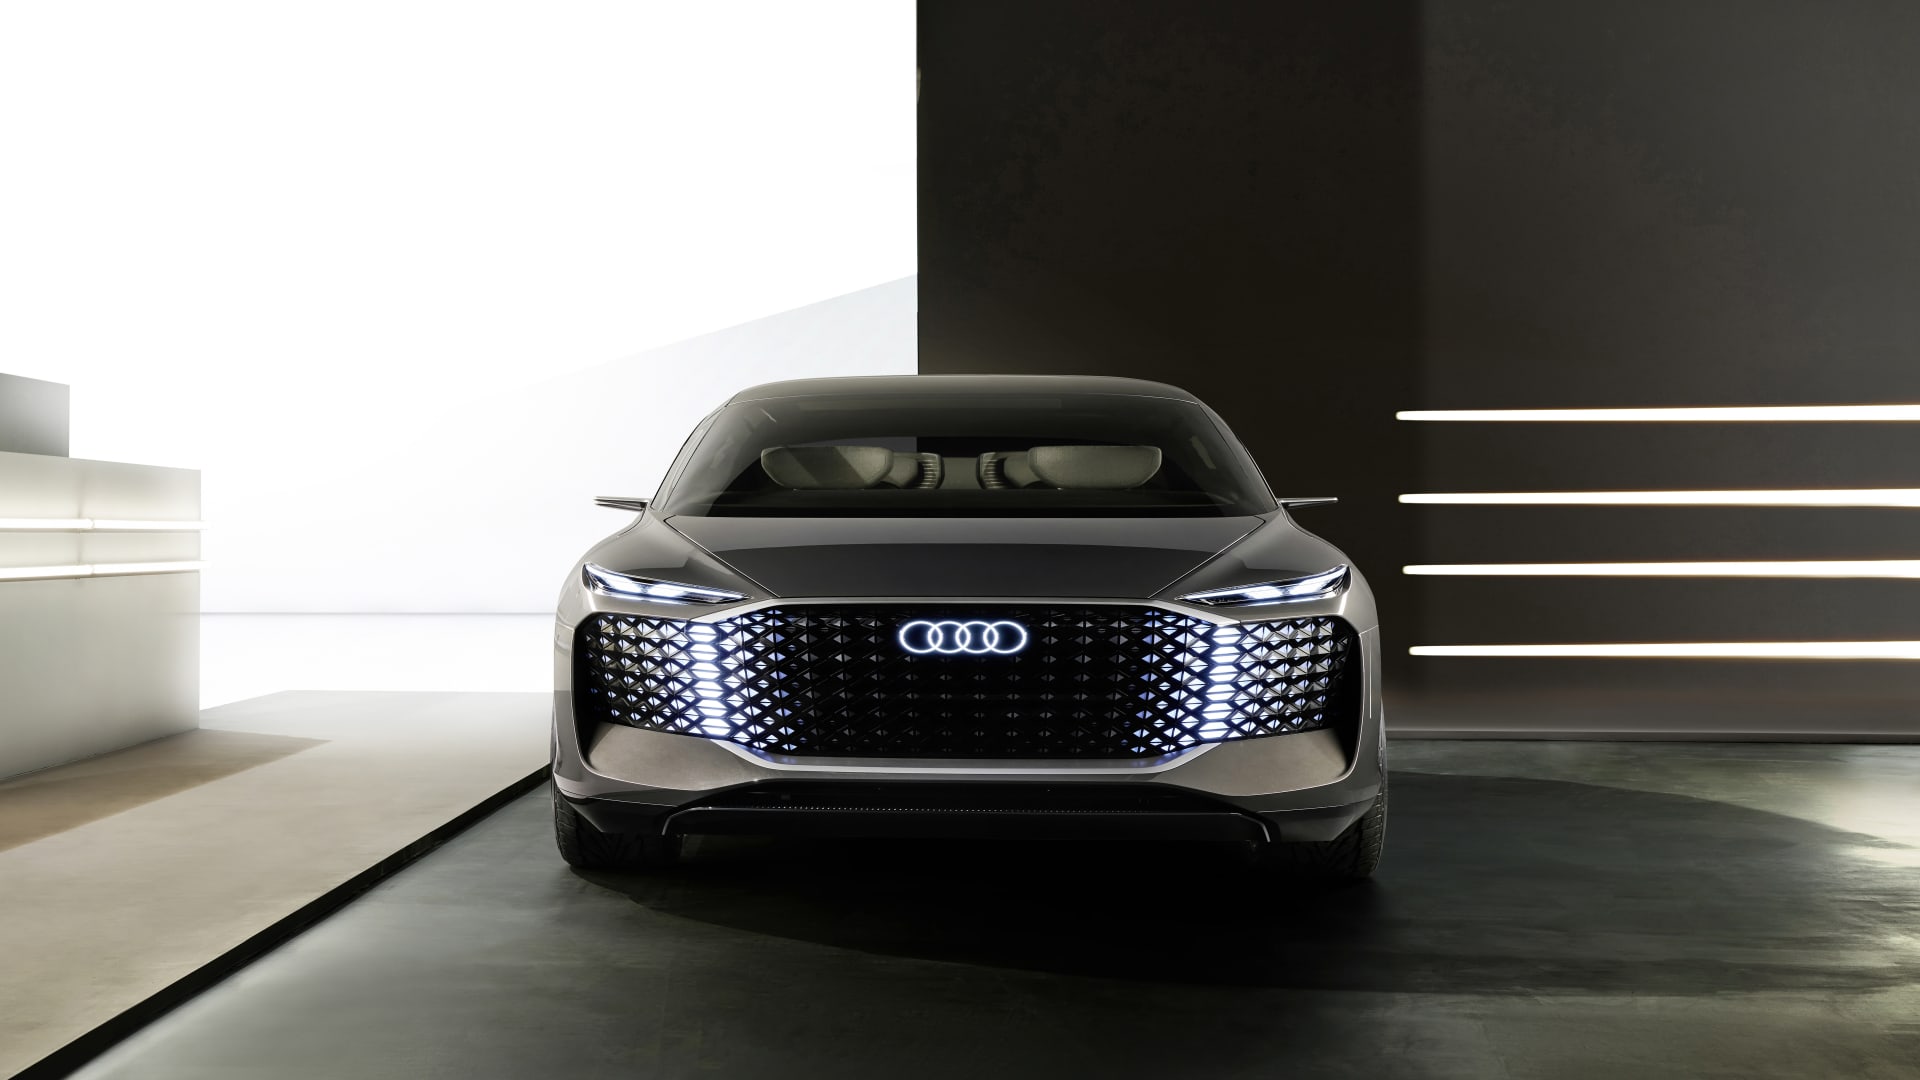 Audi electric Urbansphere concept car